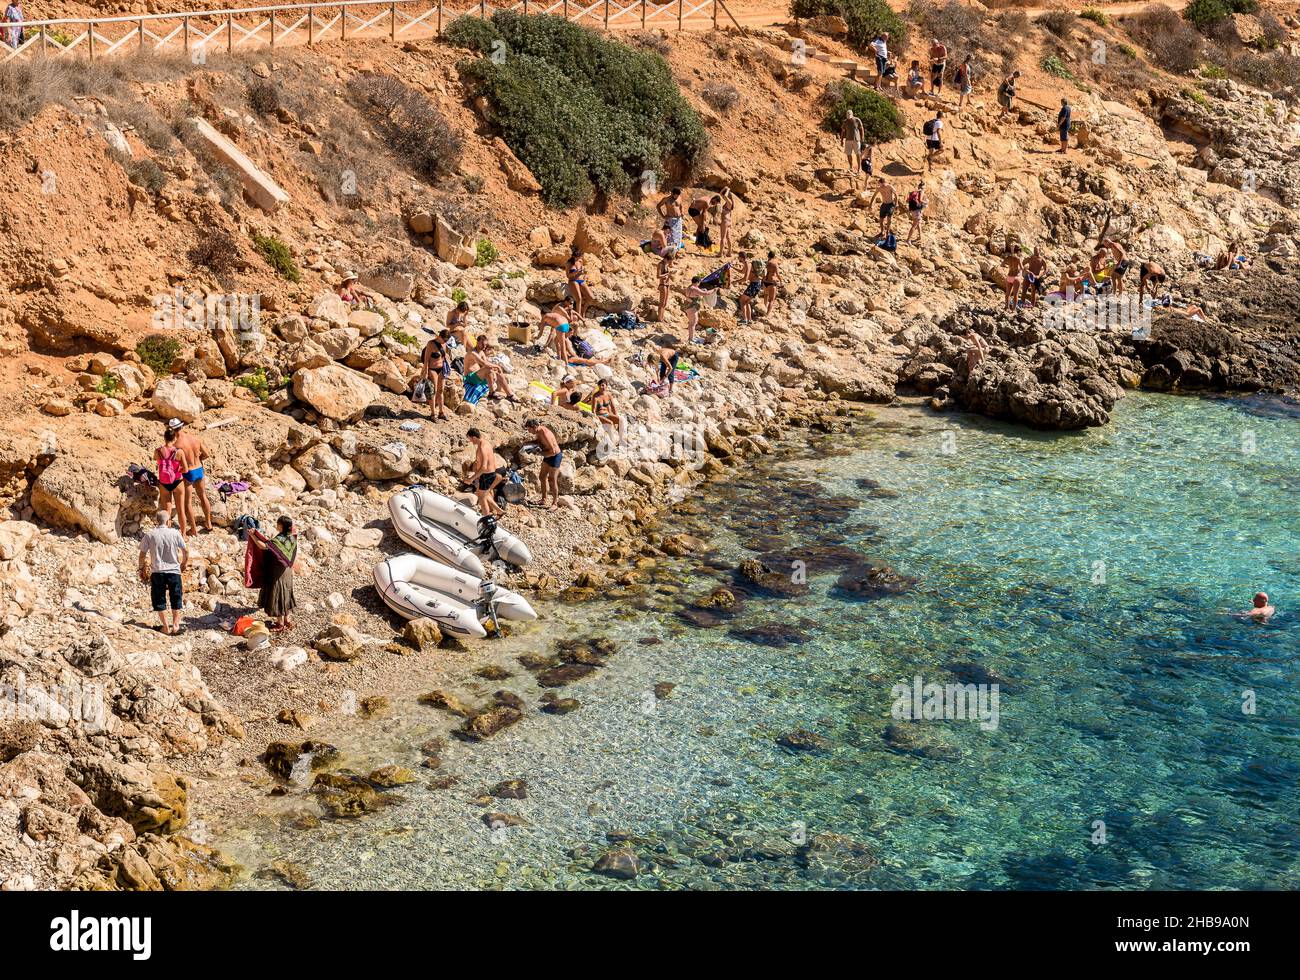 Levanzo, Trapani, Italie - 22 septembre 2016 : visiteurs profitant de la plage de Cala Fredda pendant leur voyage sur l'île de Levanzo dans la mer Méditerranée Banque D'Images